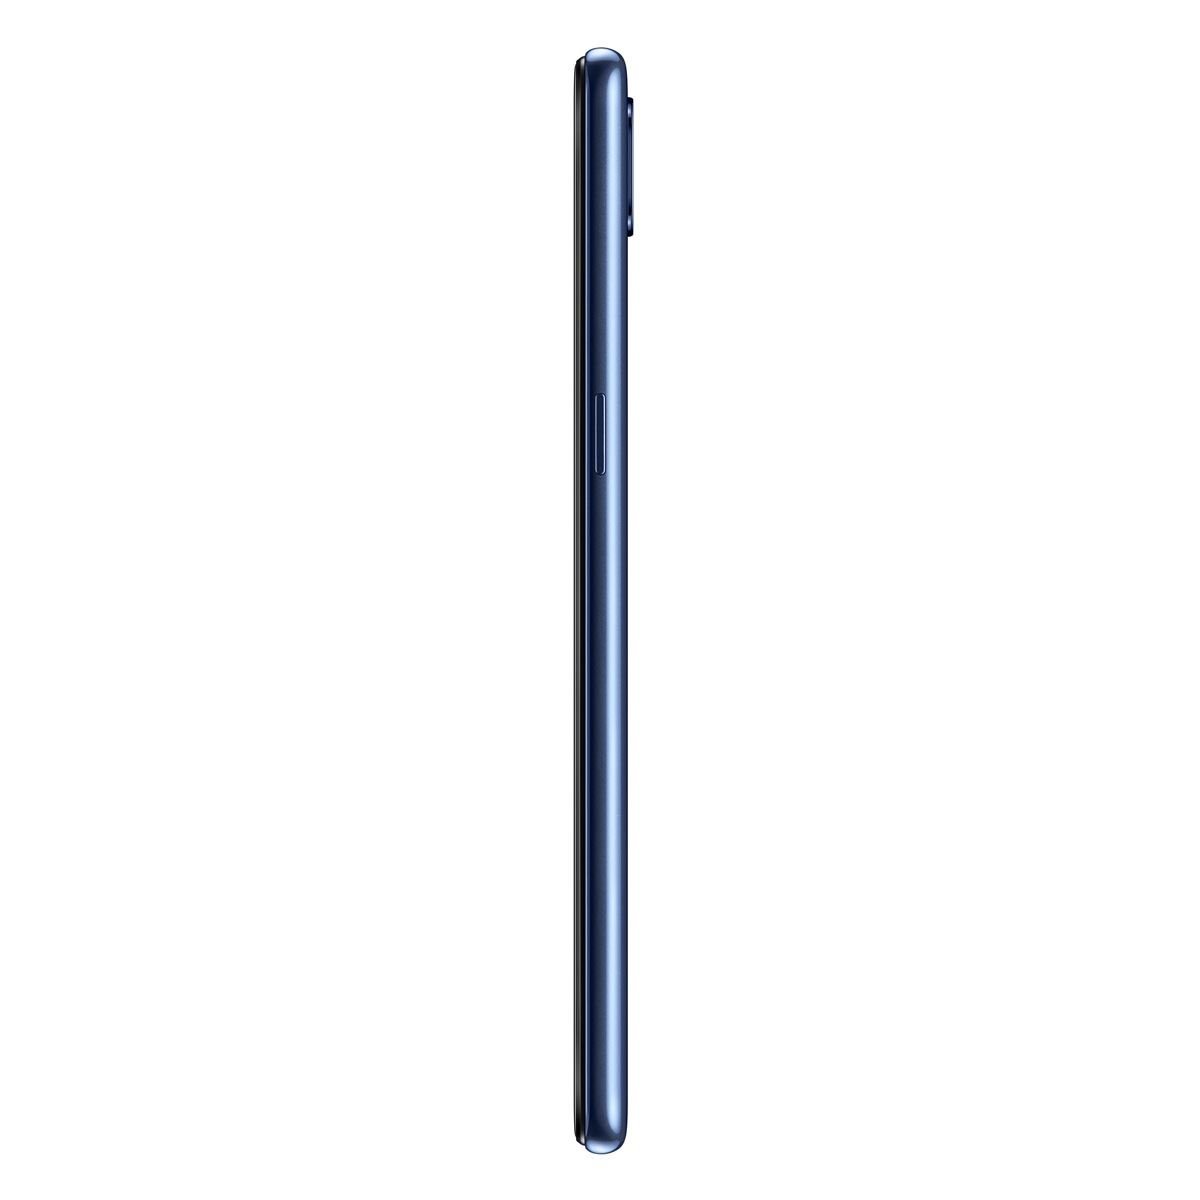 Samsung Galaxy A10S Azul Telcel R9